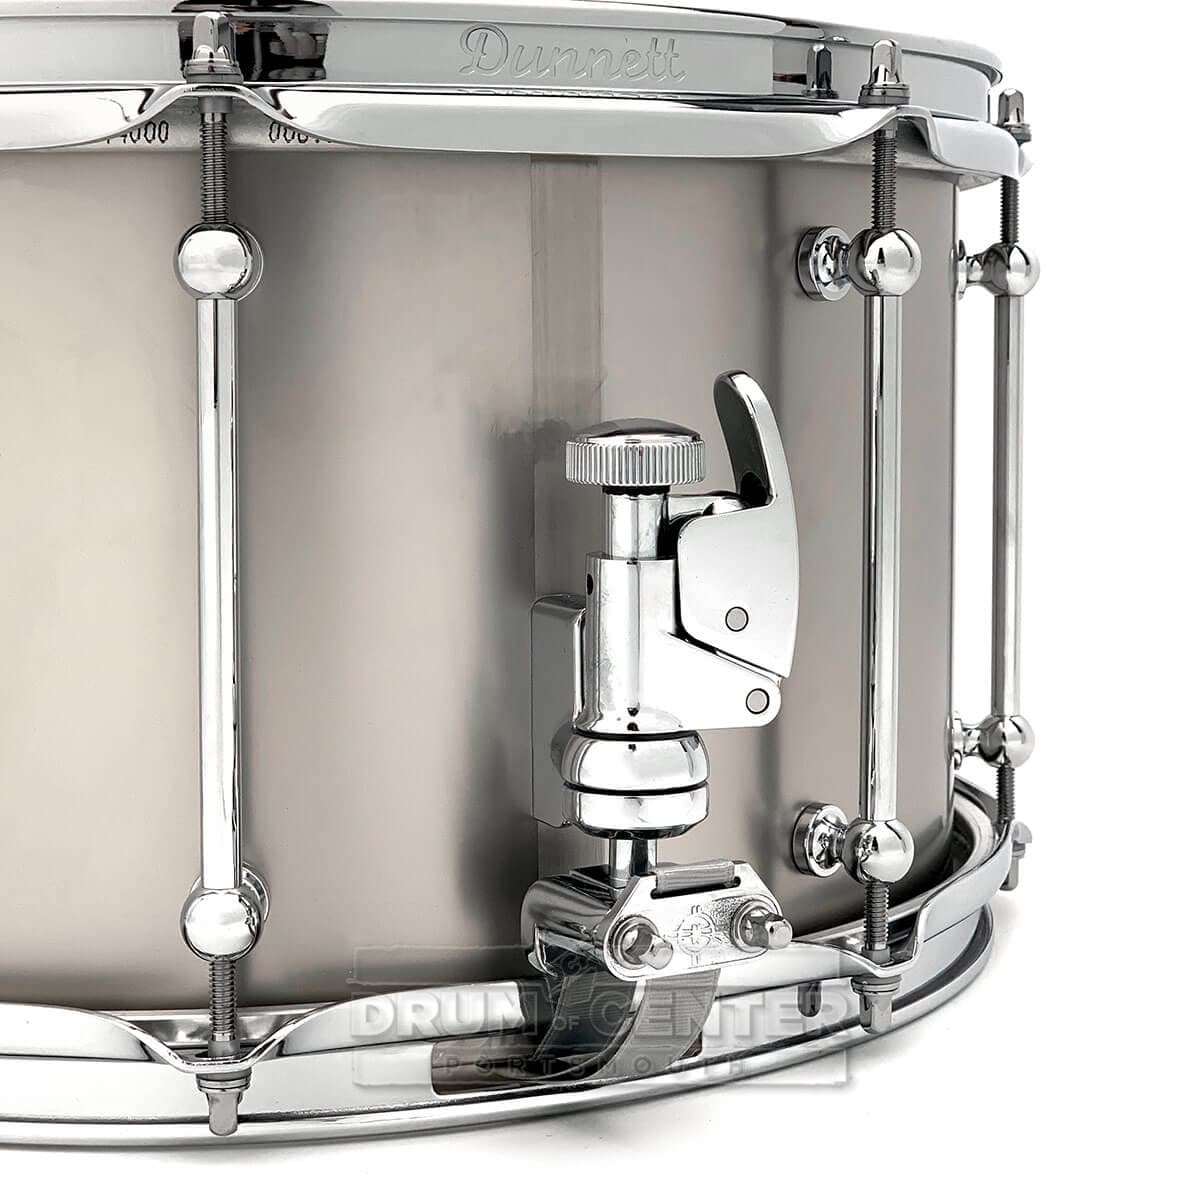 Dunnett Classic Titanium Snare Drum 14x8